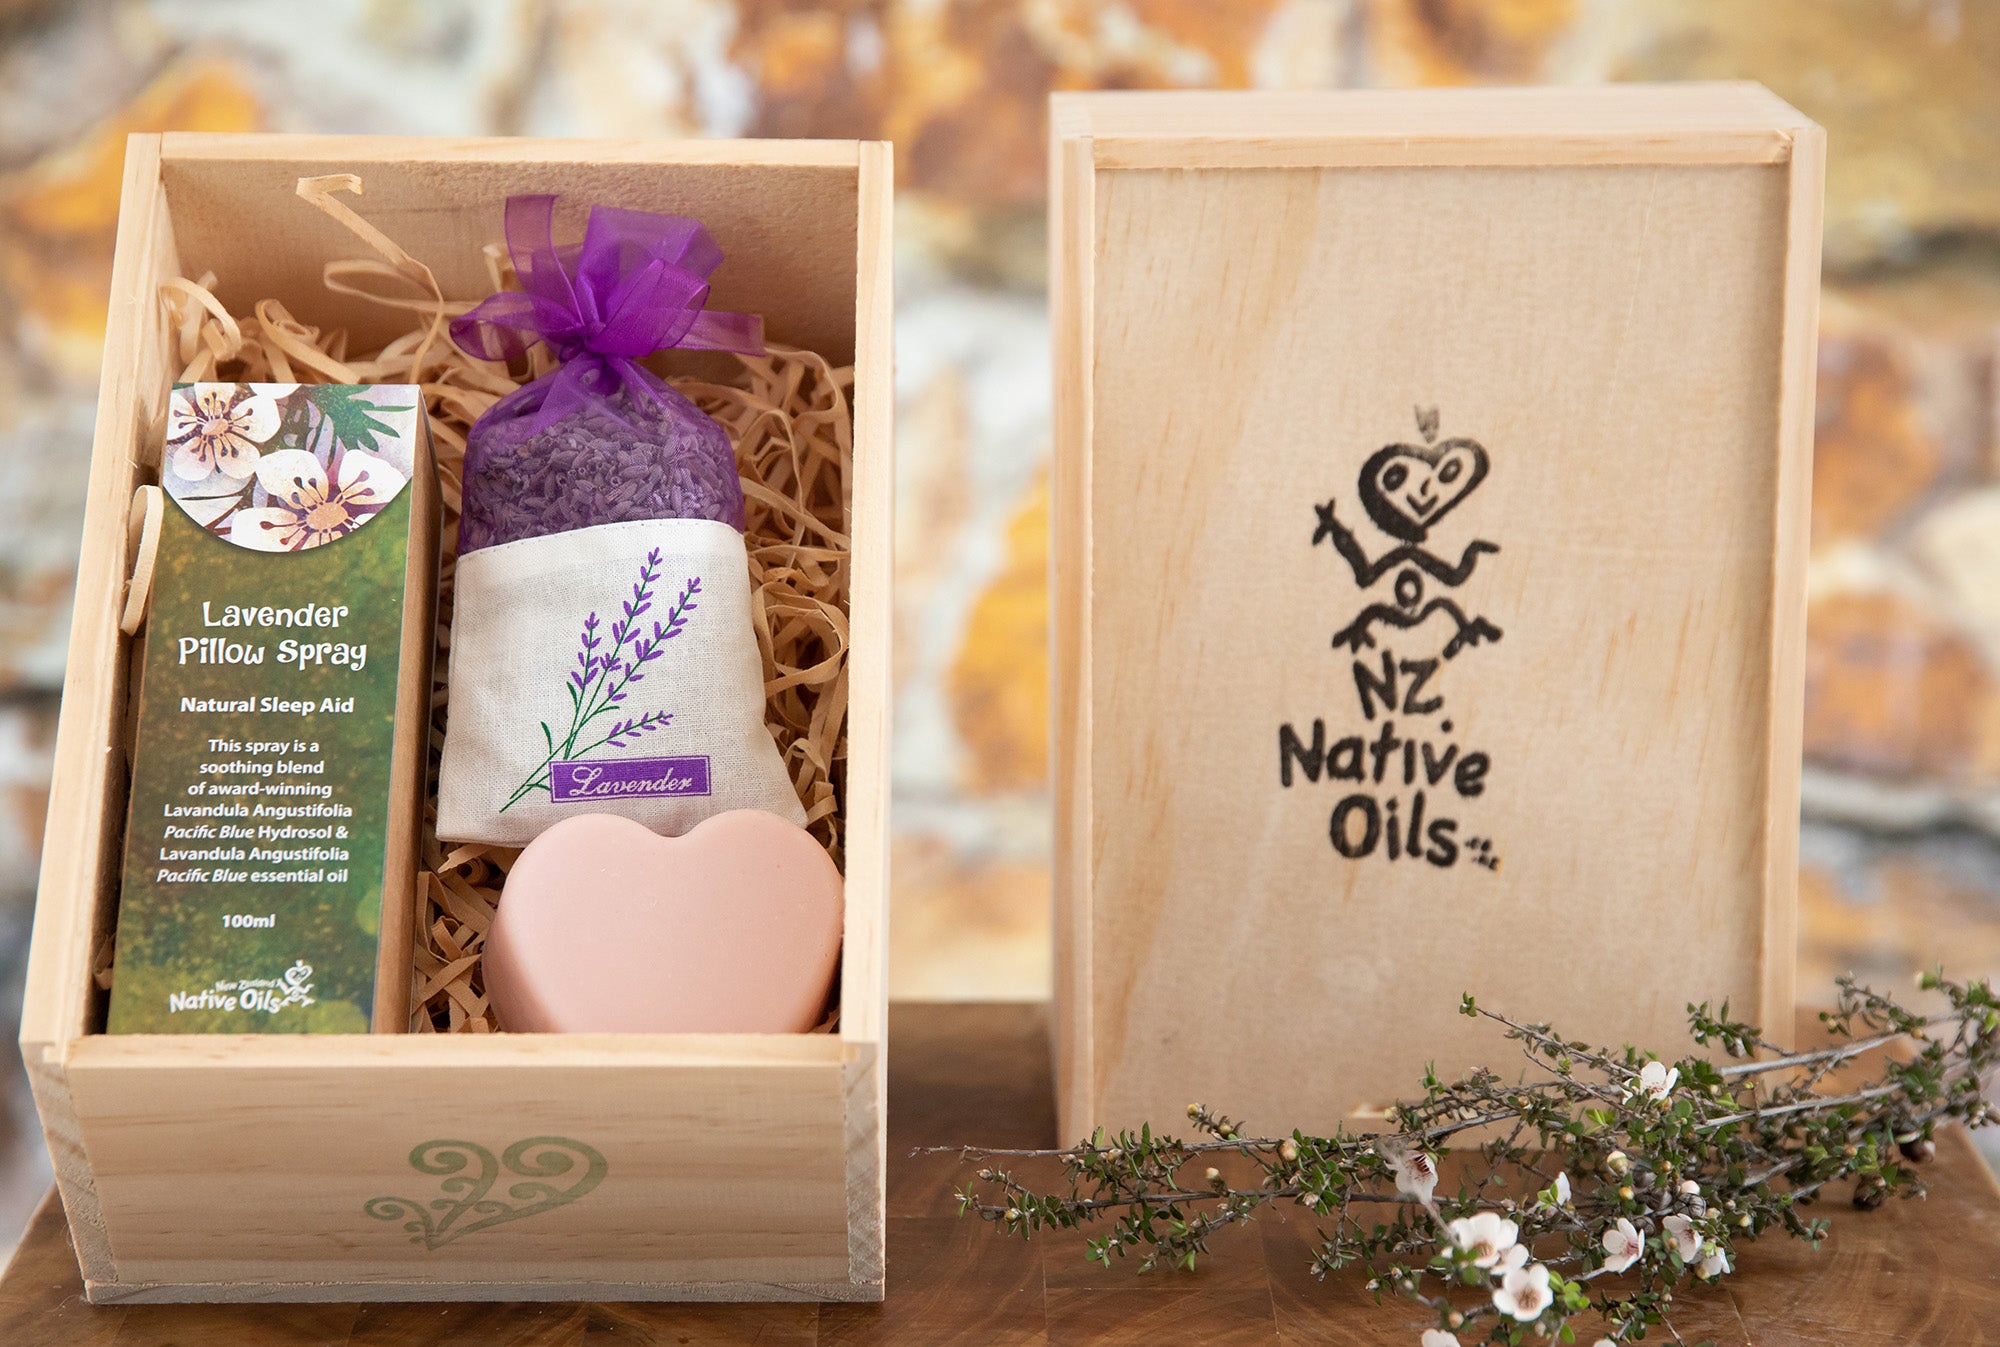 Lavender Gift Box-NZ Native Oils Ltd